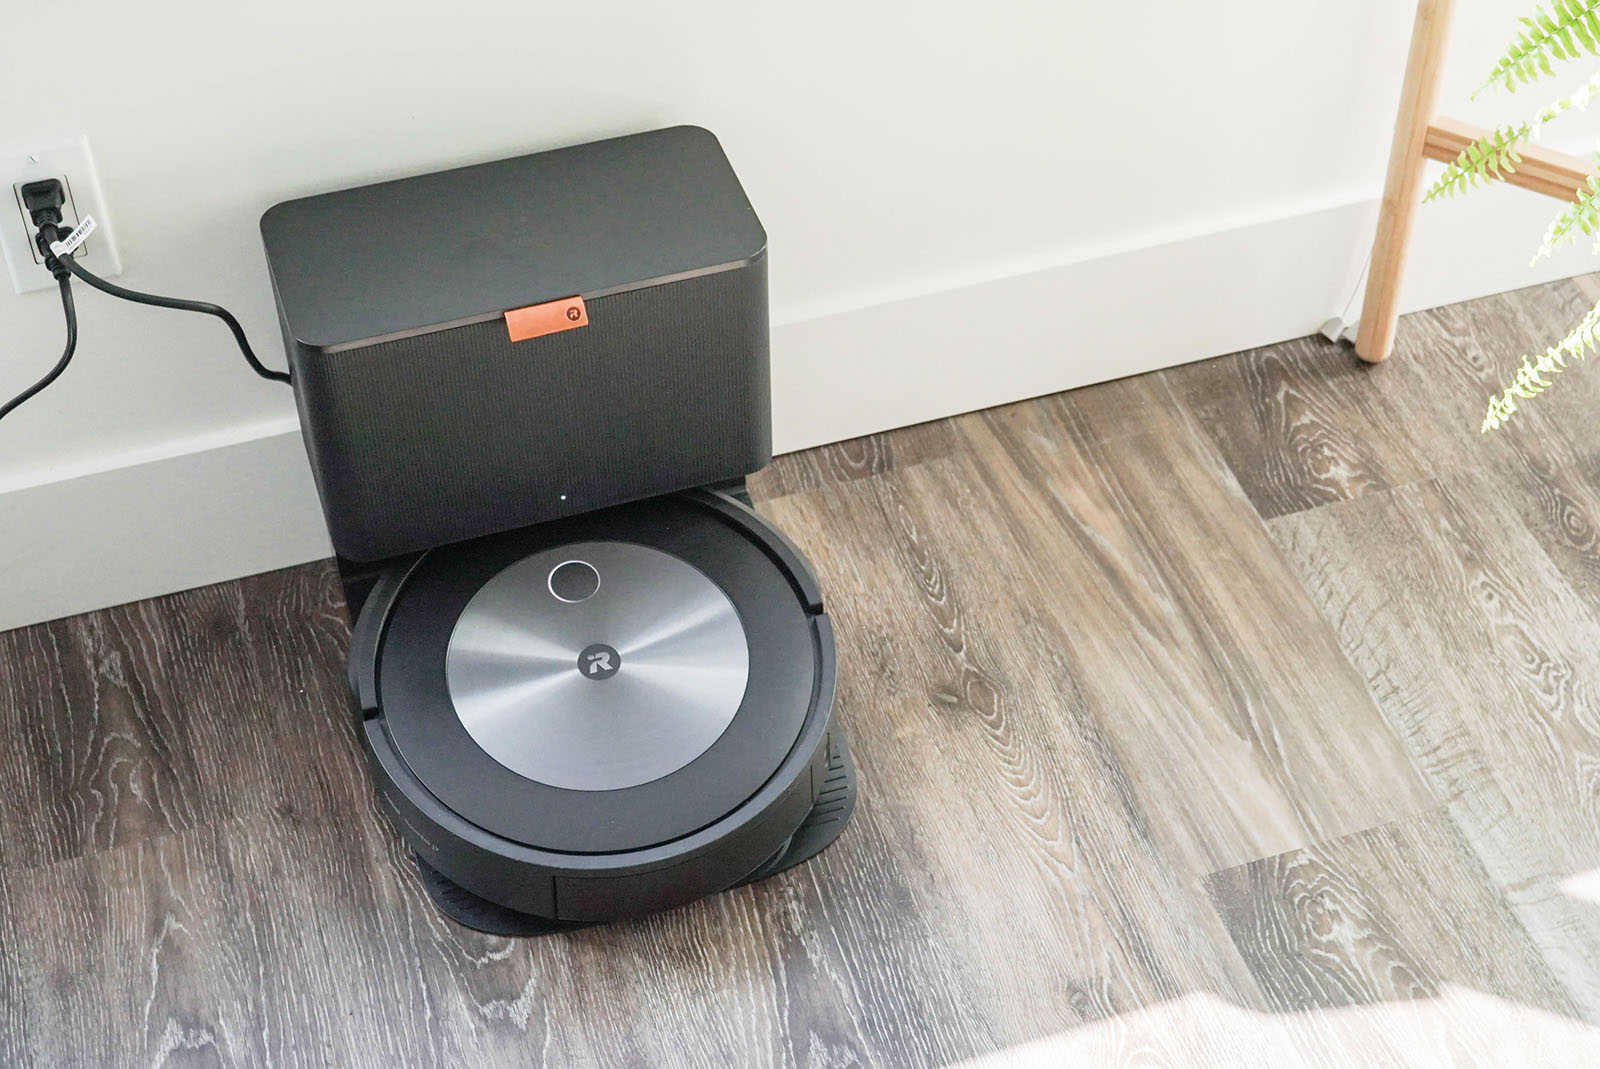 iRobot Roomba j7+ Self-Emptying Robot Vacuum Review